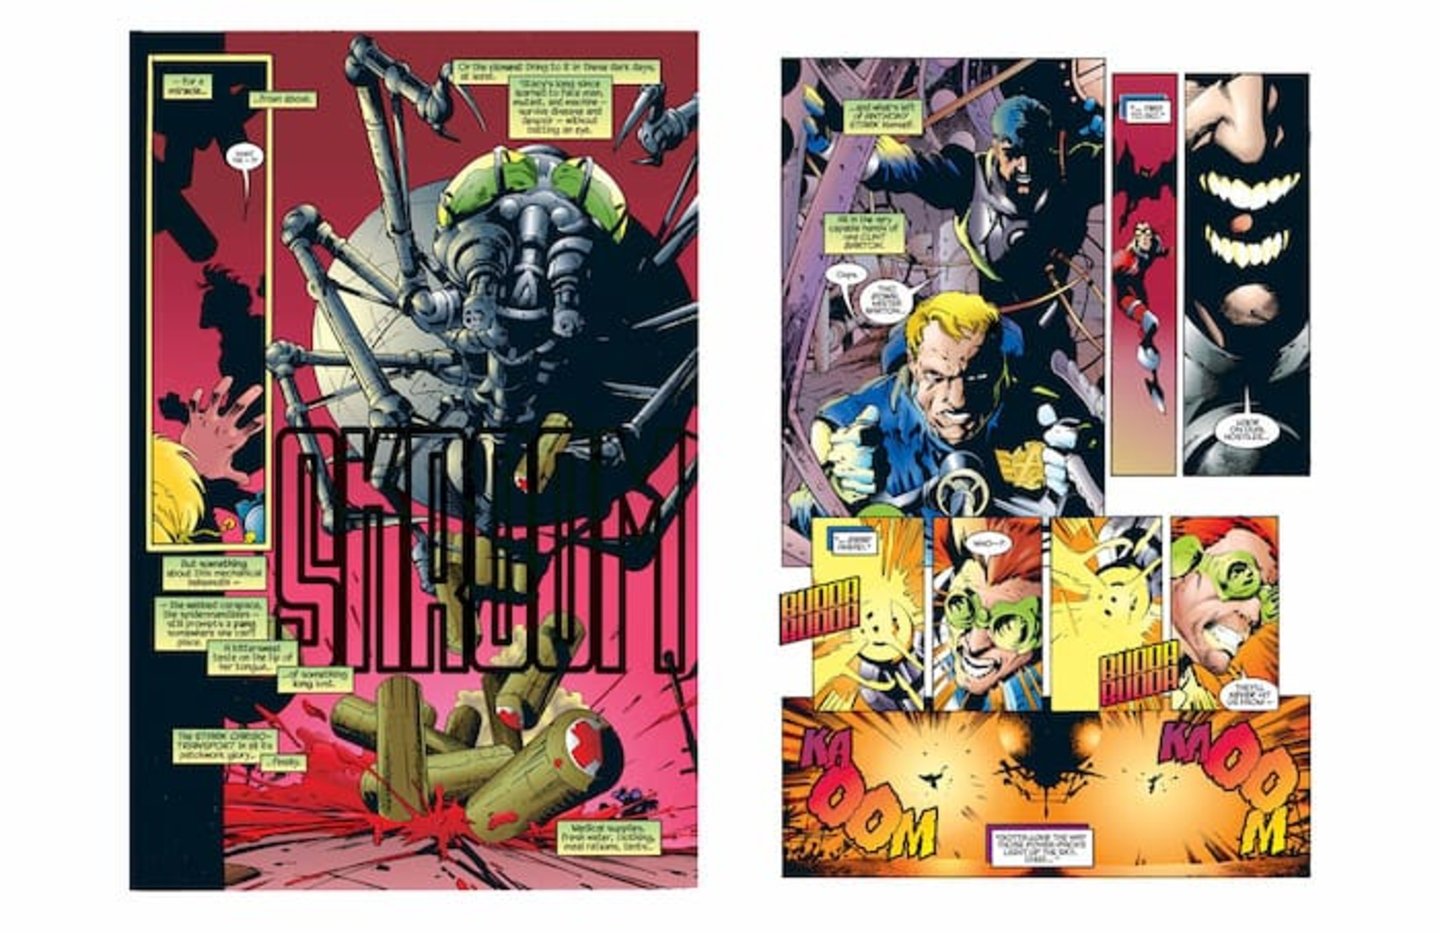 Tony Stark llegando en una araña gigante de hierro en el volumen #1 del cómic X-Universe